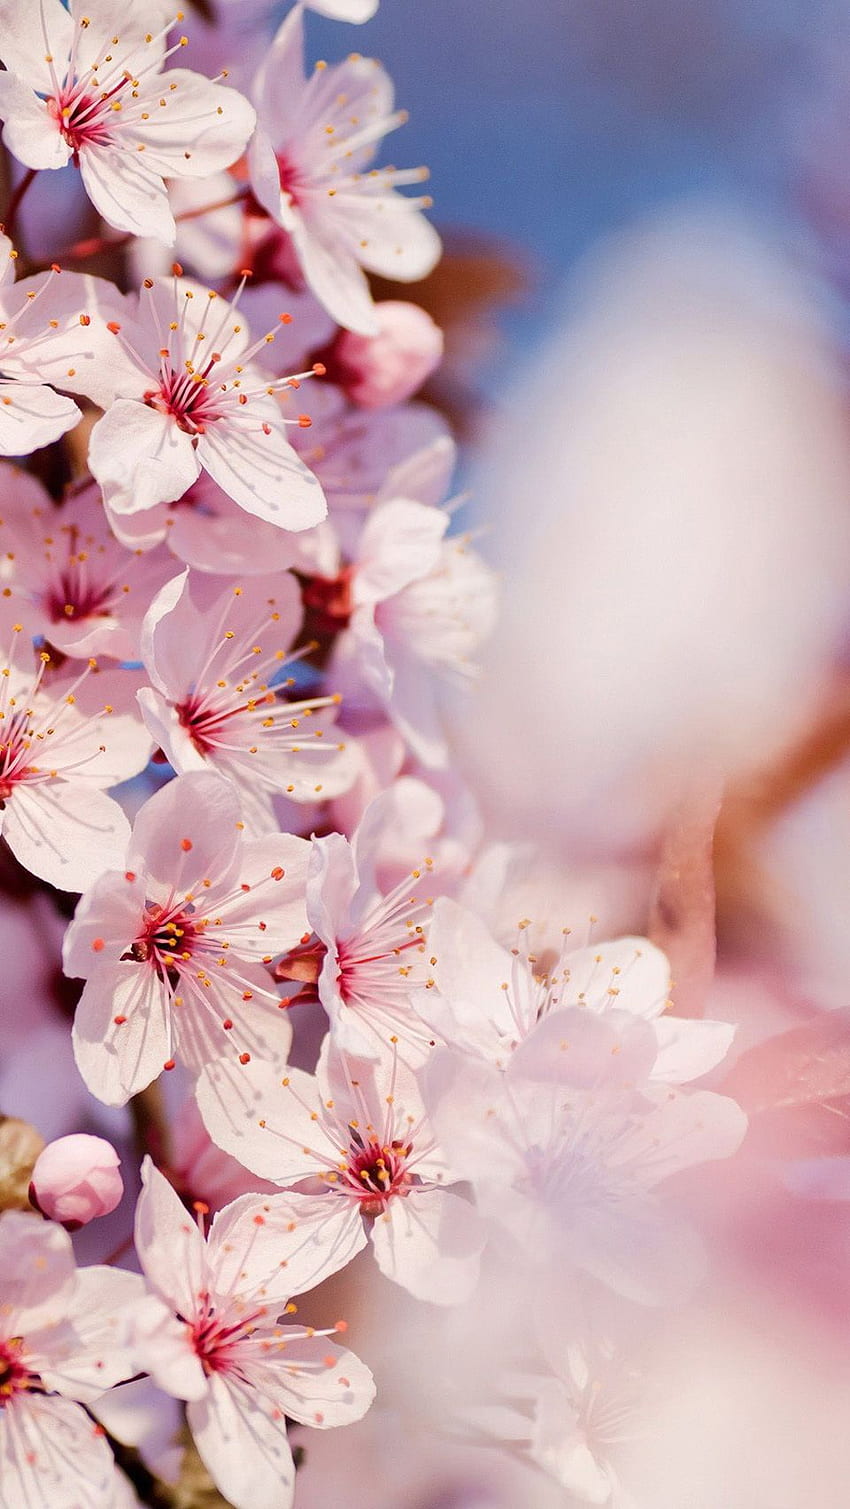 iPhone 6 Cherry Blossom 968 completo, flor de cerejeira japonesa Papel de parede de celular HD